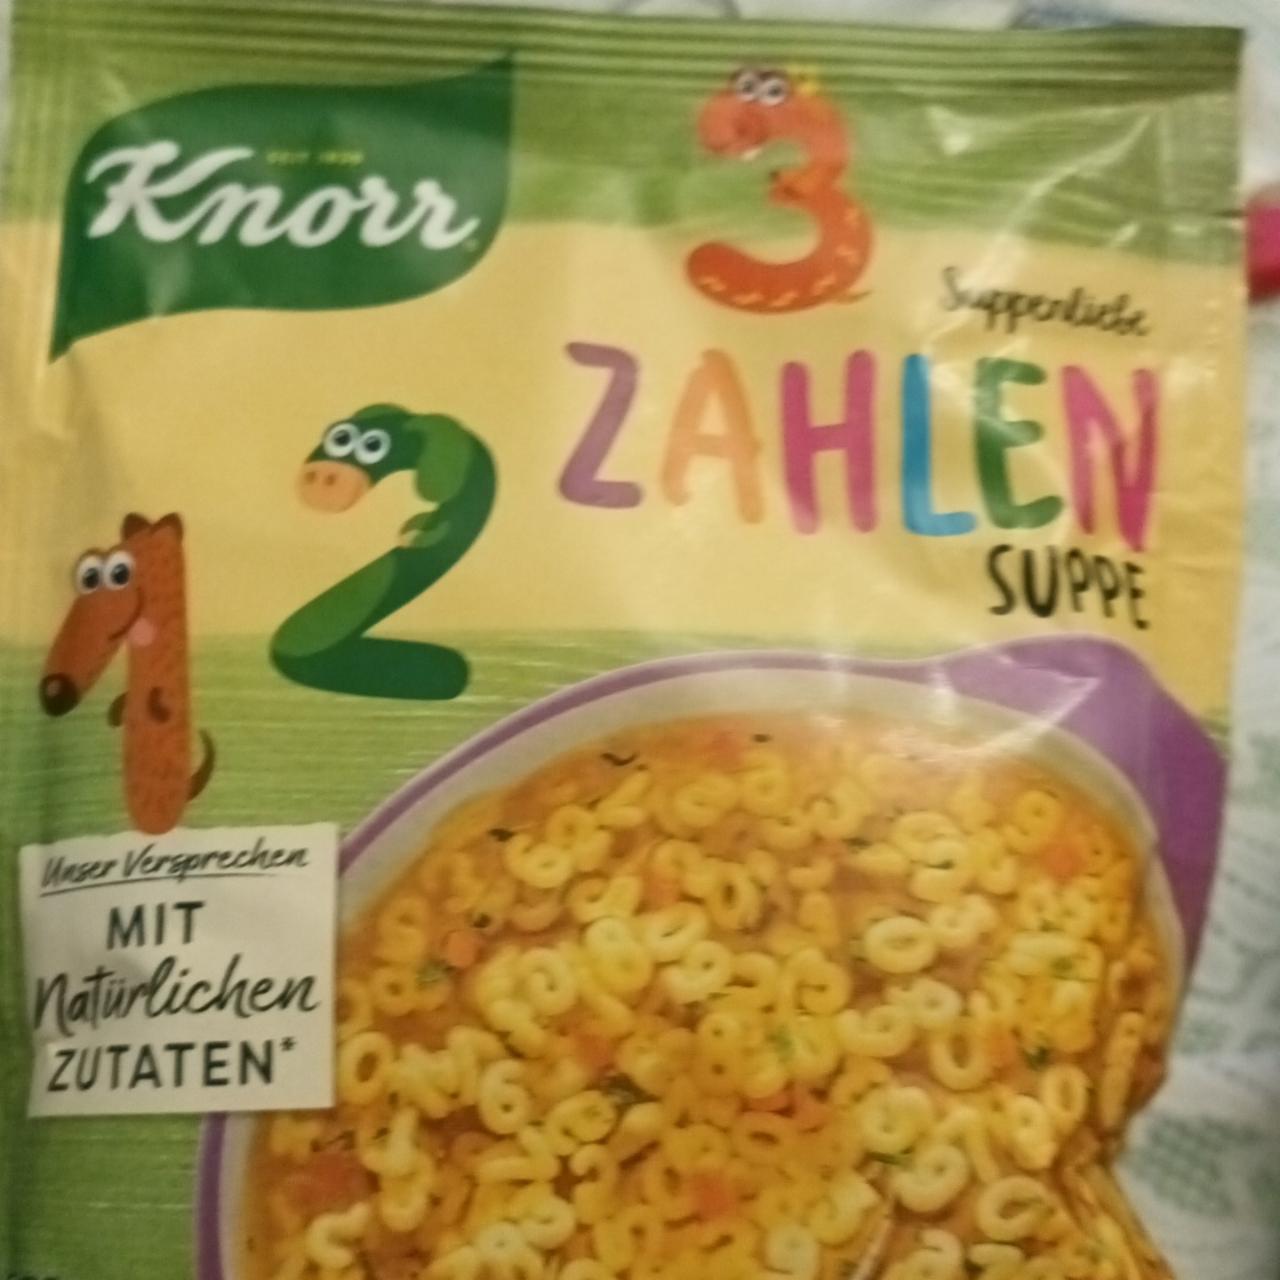 Фото - суп с макаронами в форме цифр Suppe zahlen Knorr